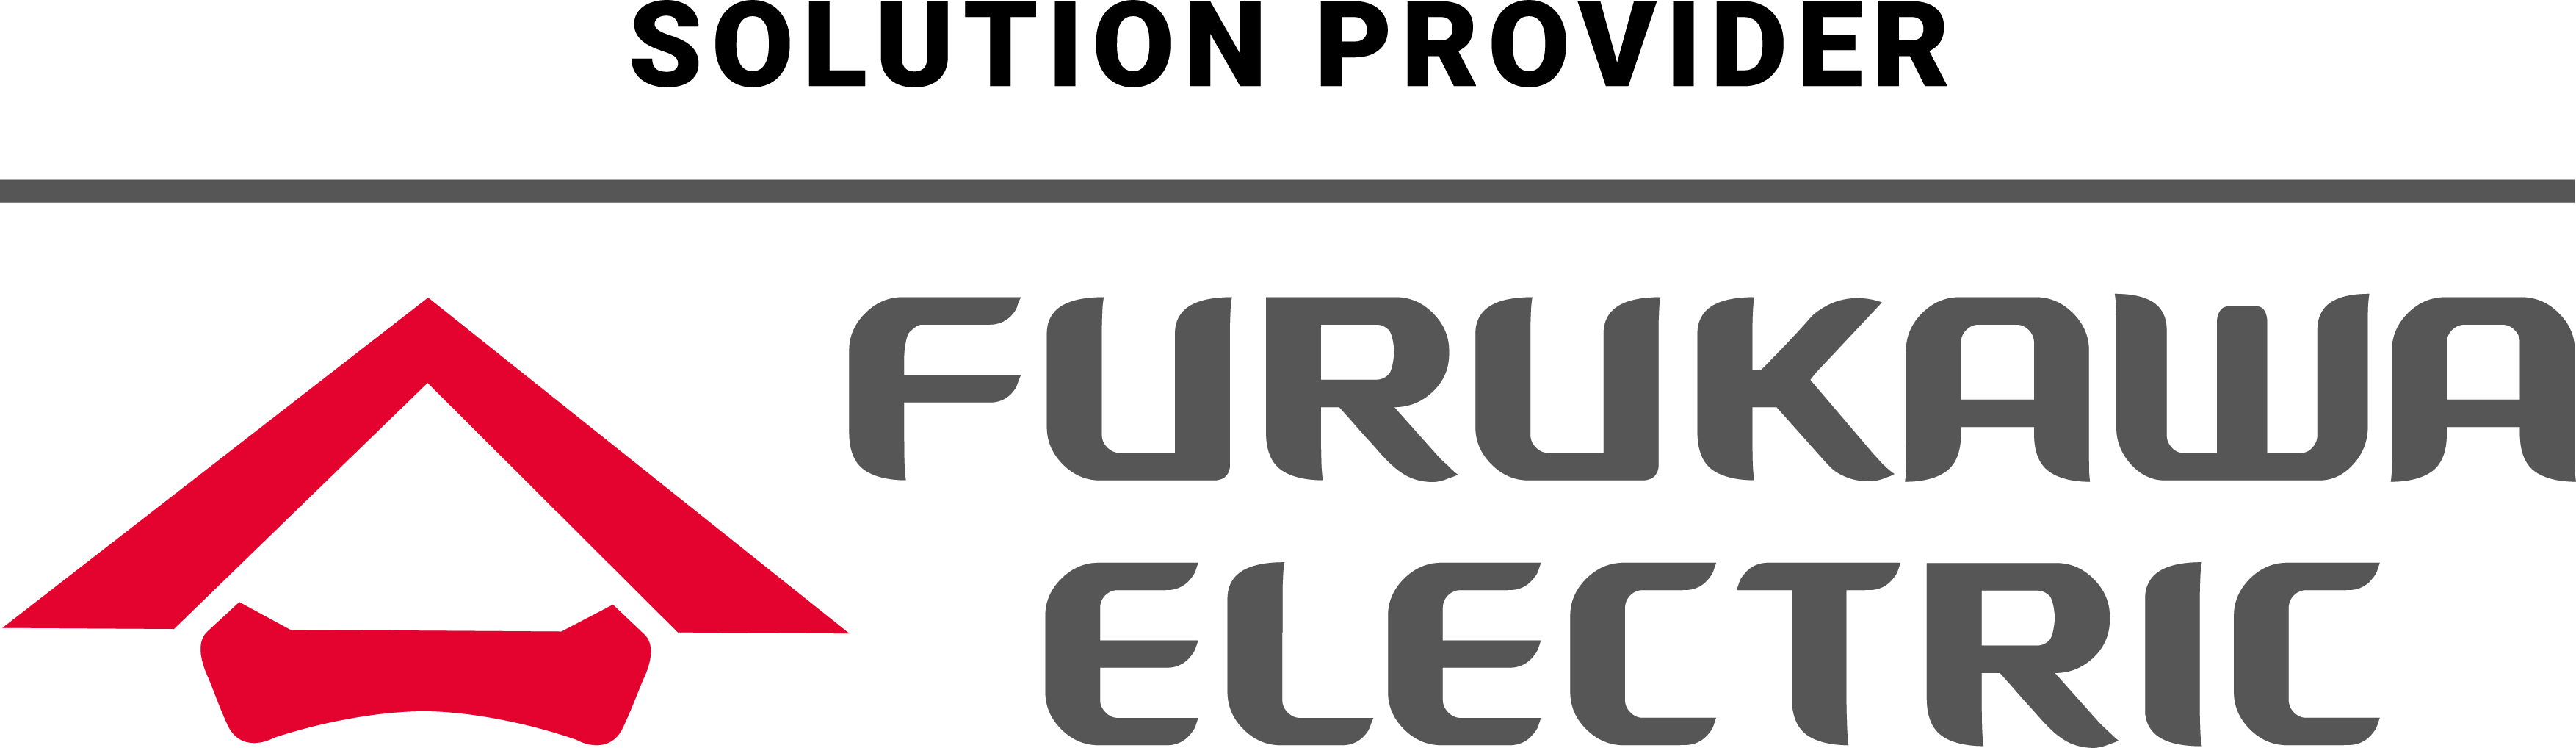 furukawa-electric.png